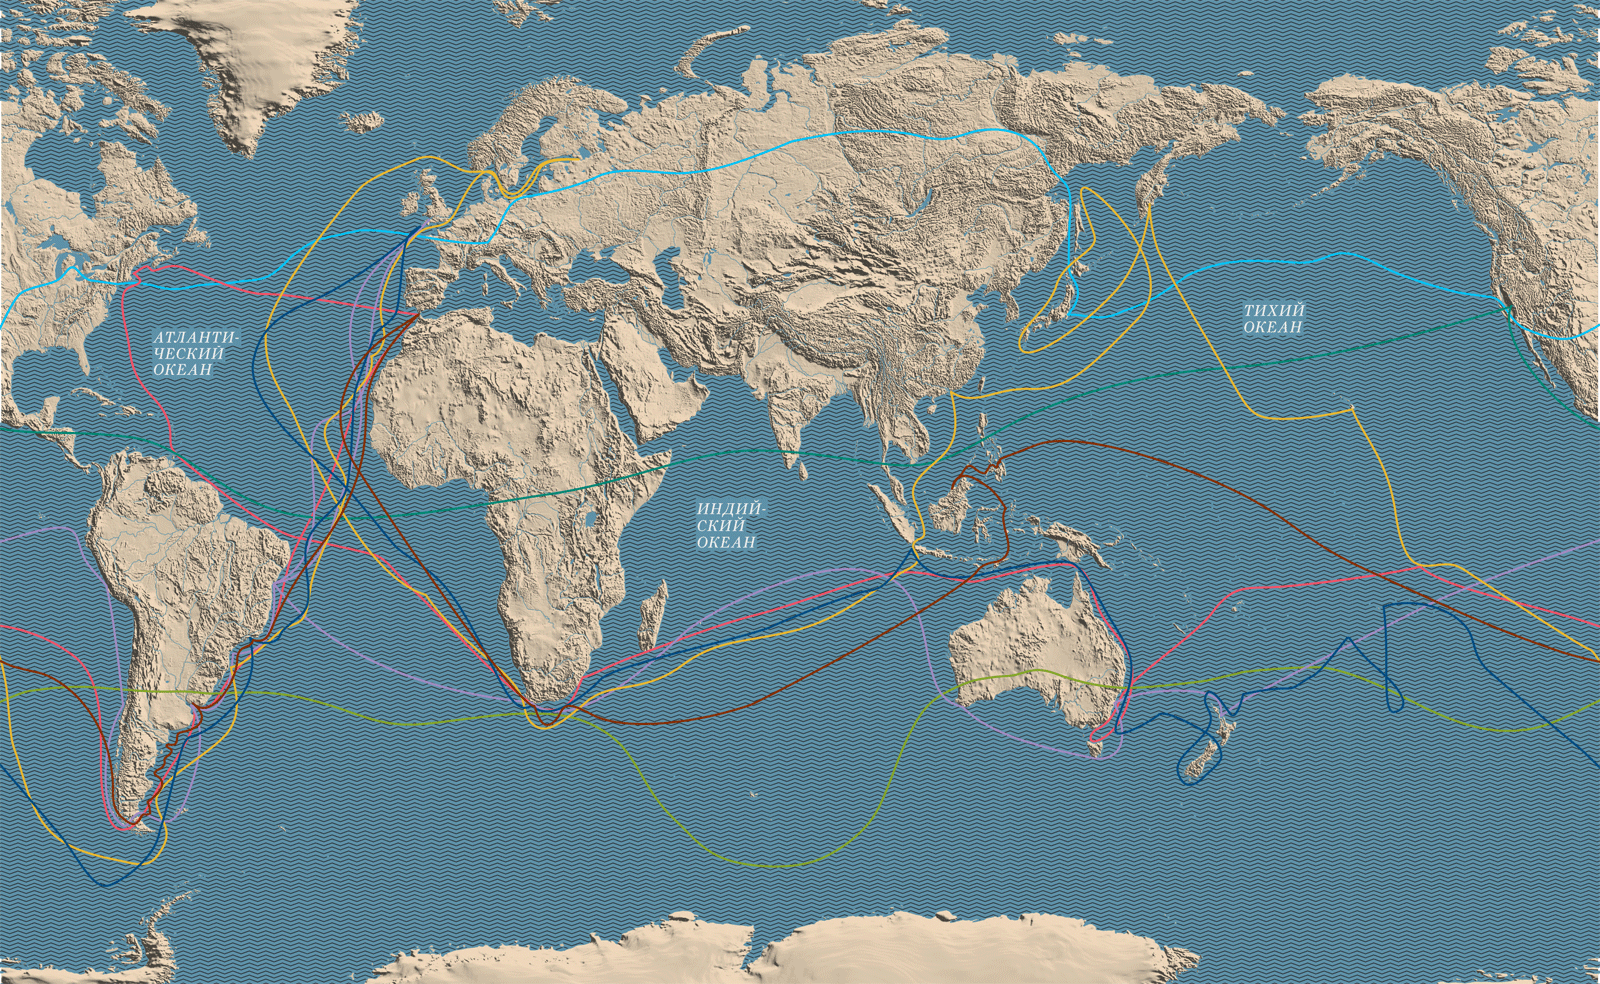 Карта кругосветного путешествия